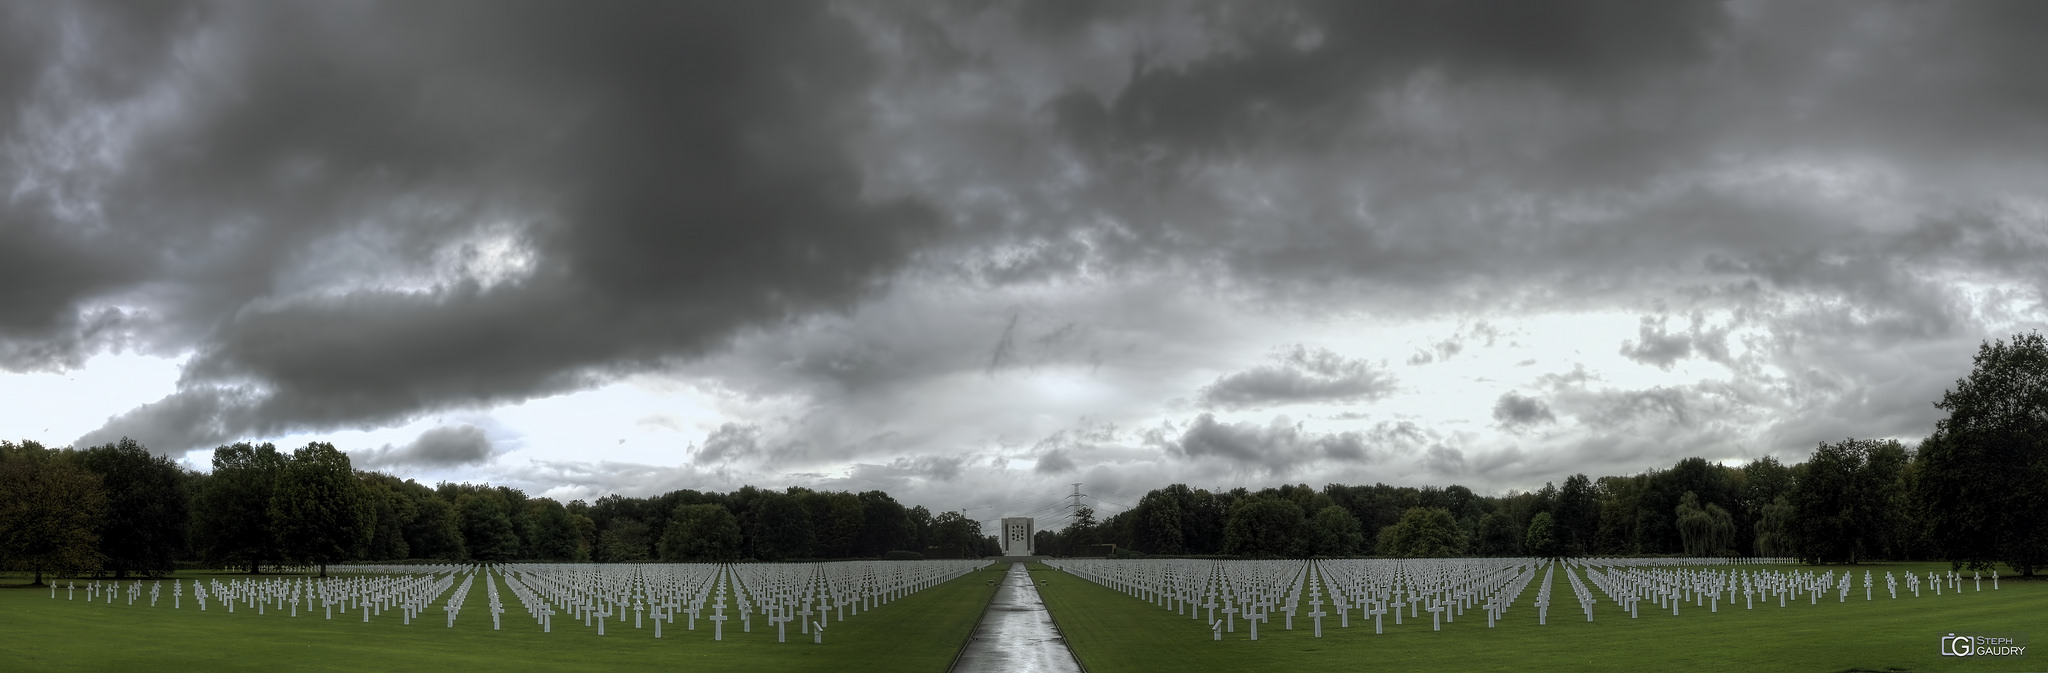 Ardennes American Cemetery and Memorial [Klicken Sie hier, um die Diashow zu starten]